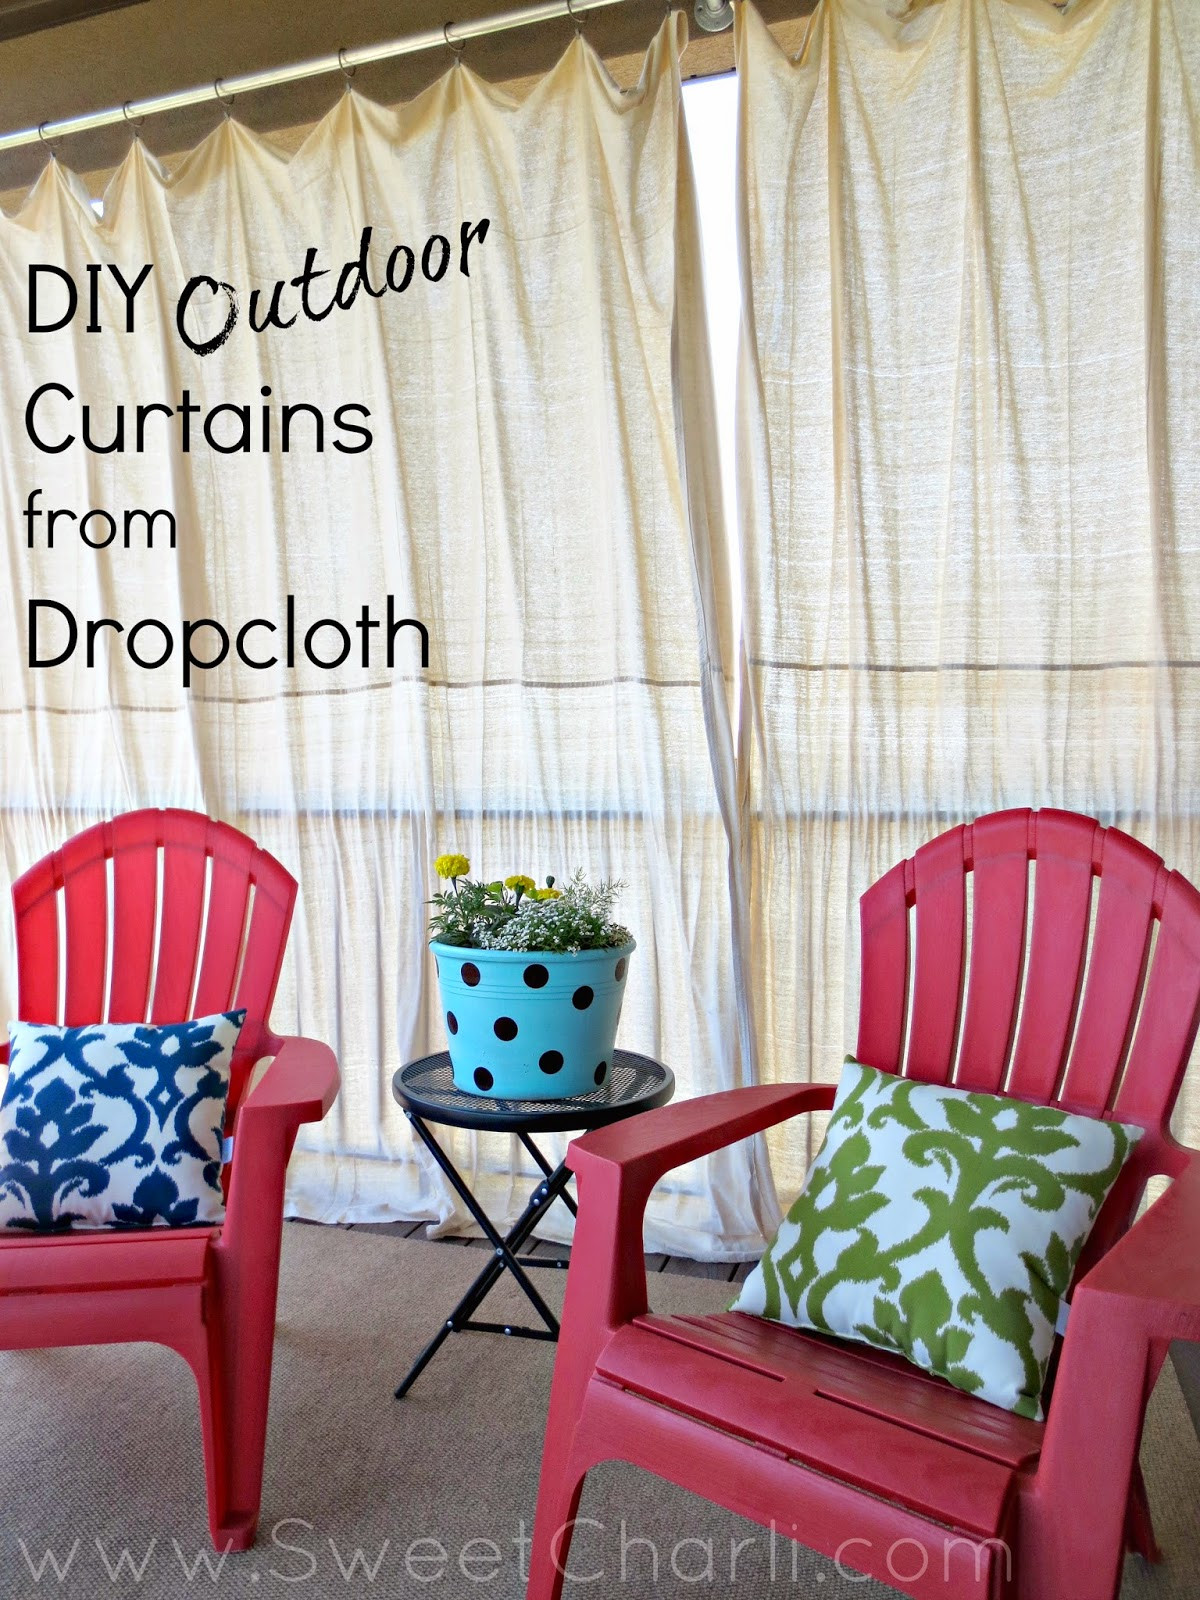 DIY Outdoor Curtains
 DIY Outdoor Curtains from Dropcloth Sweet Charli